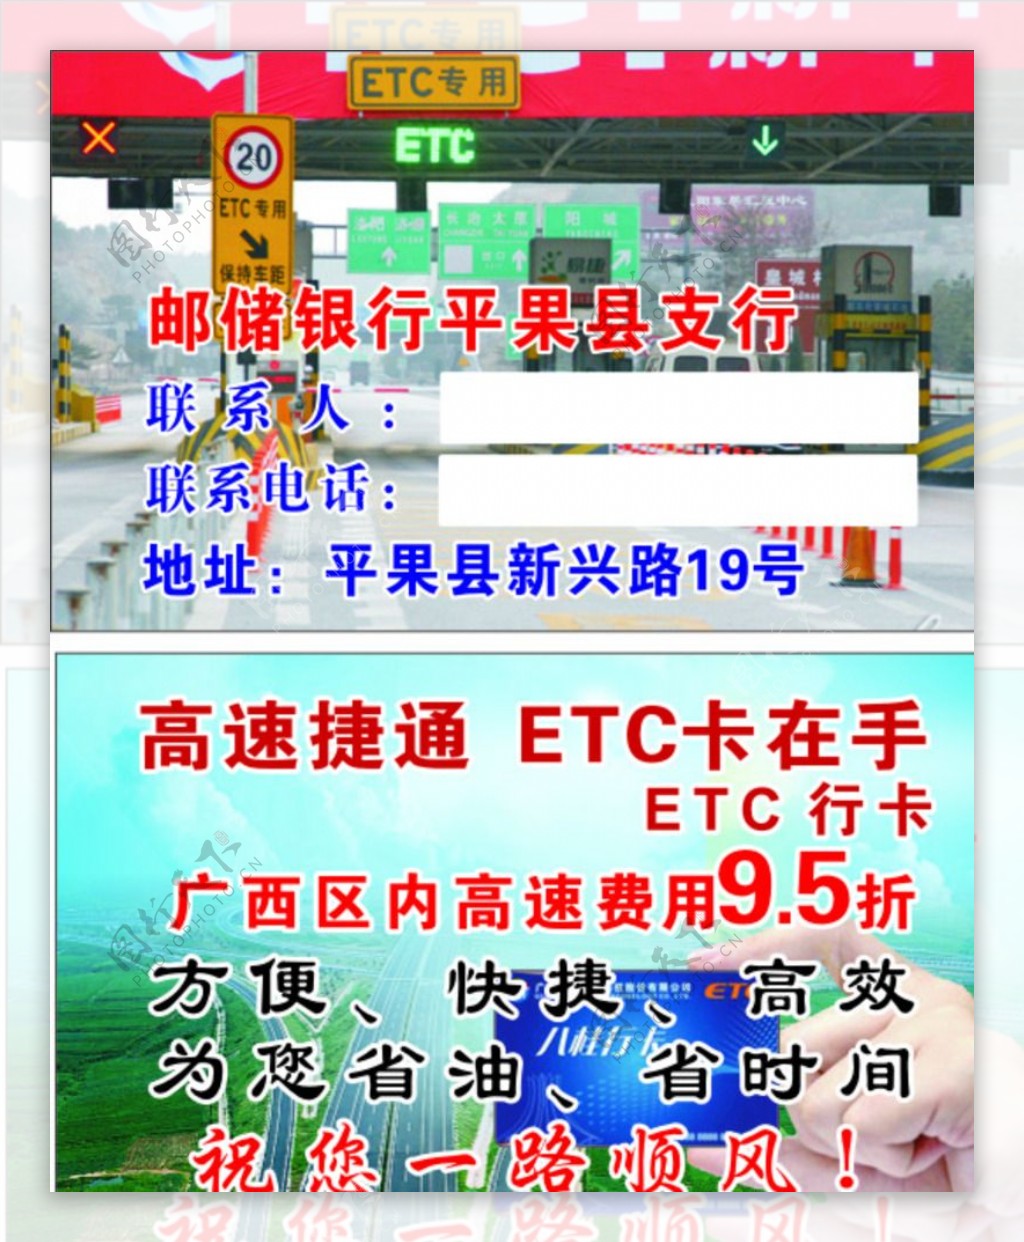 ETC名片